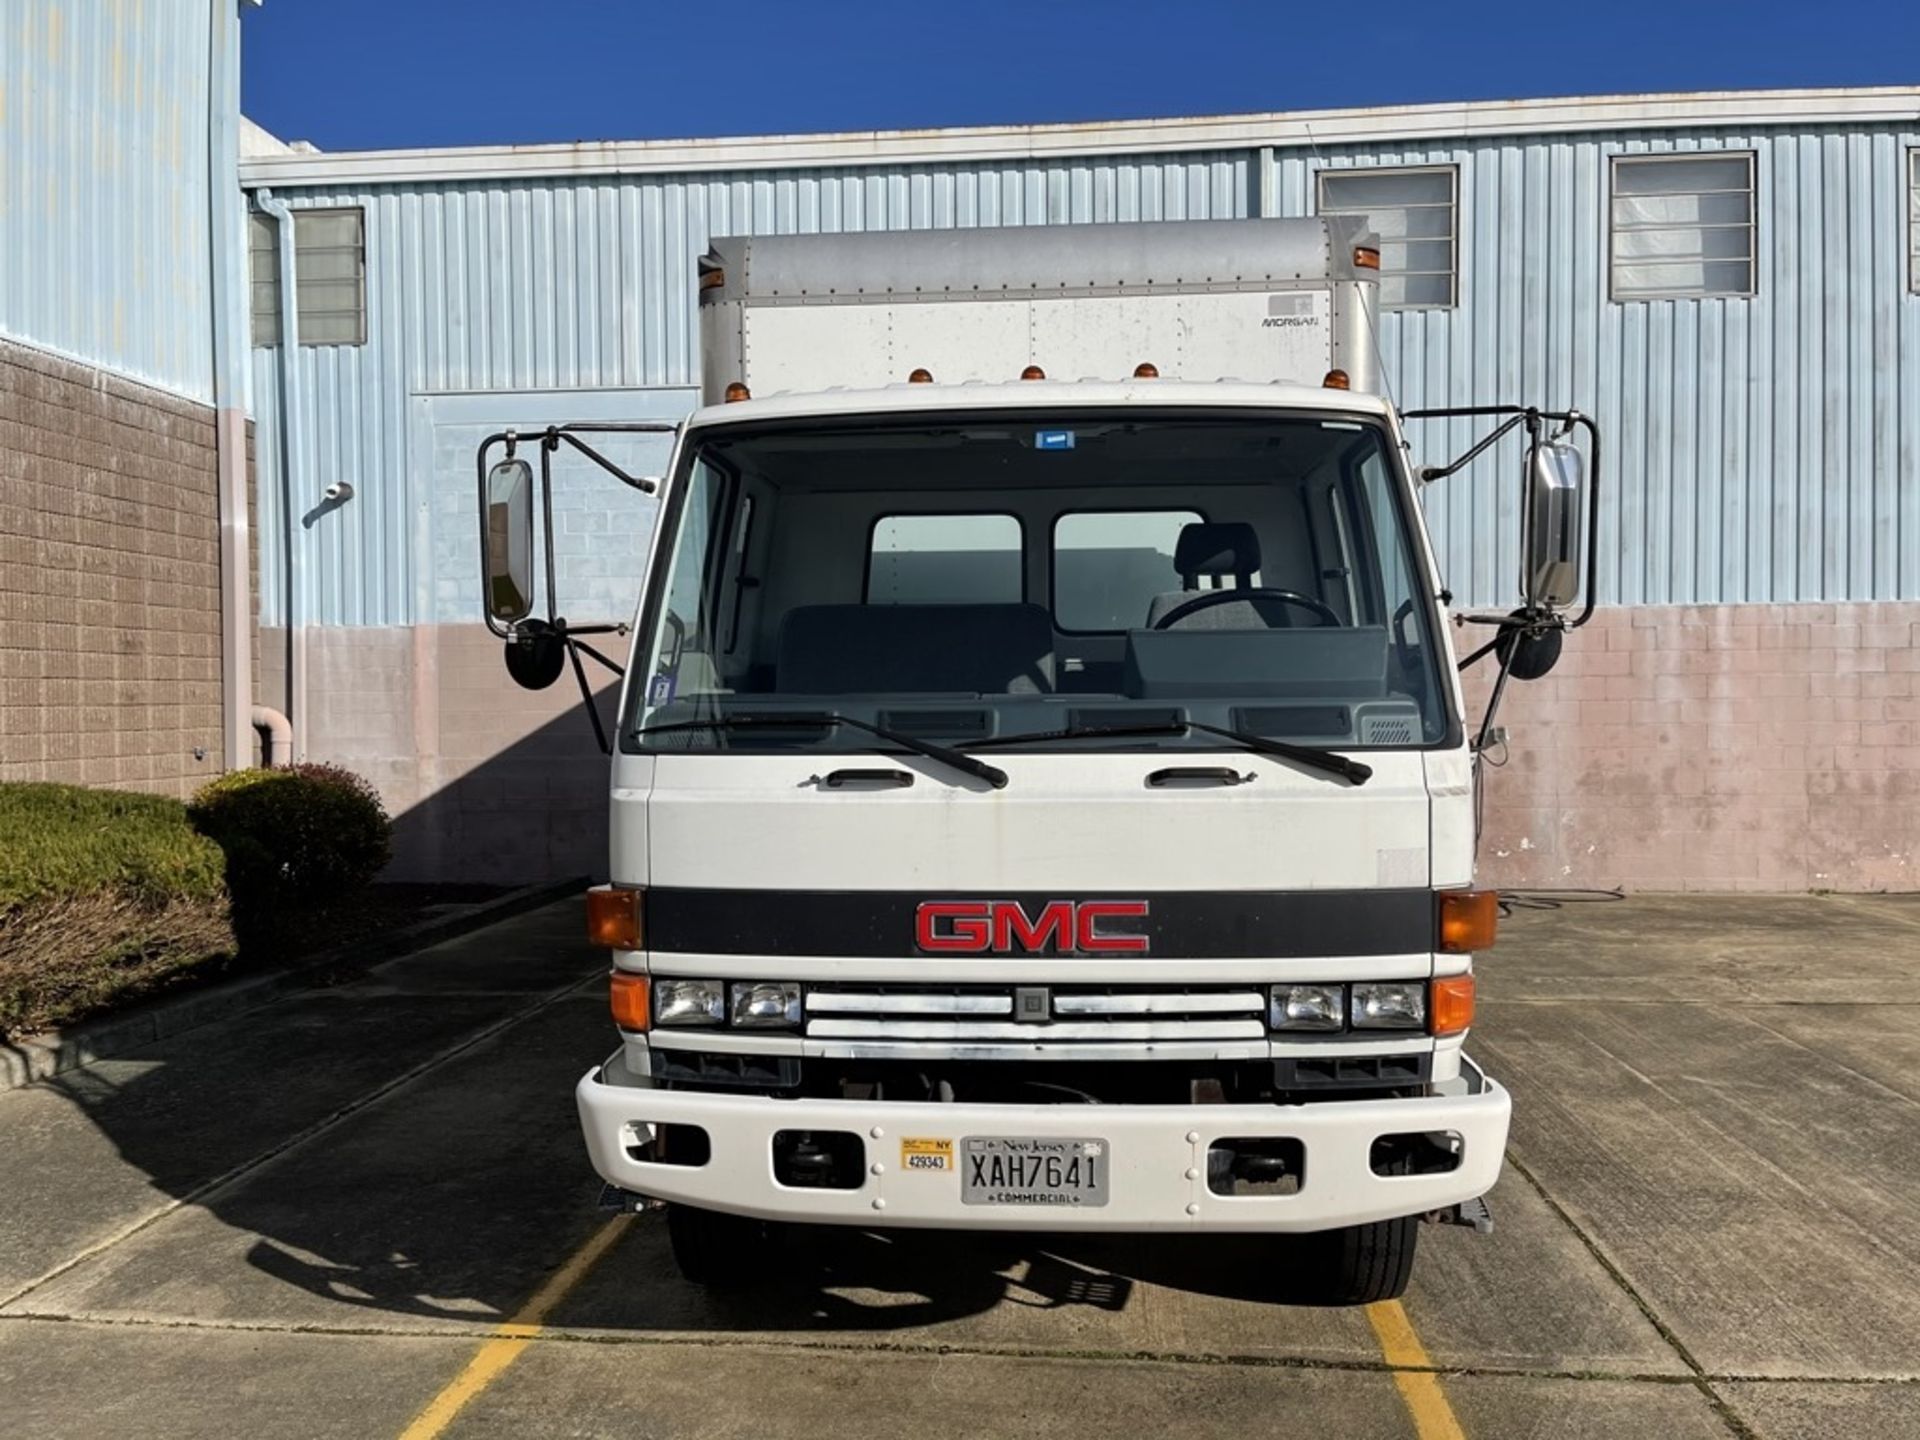 1993 Gmc 6000 Series, Diesel 22' Box Truck - Image 2 of 19